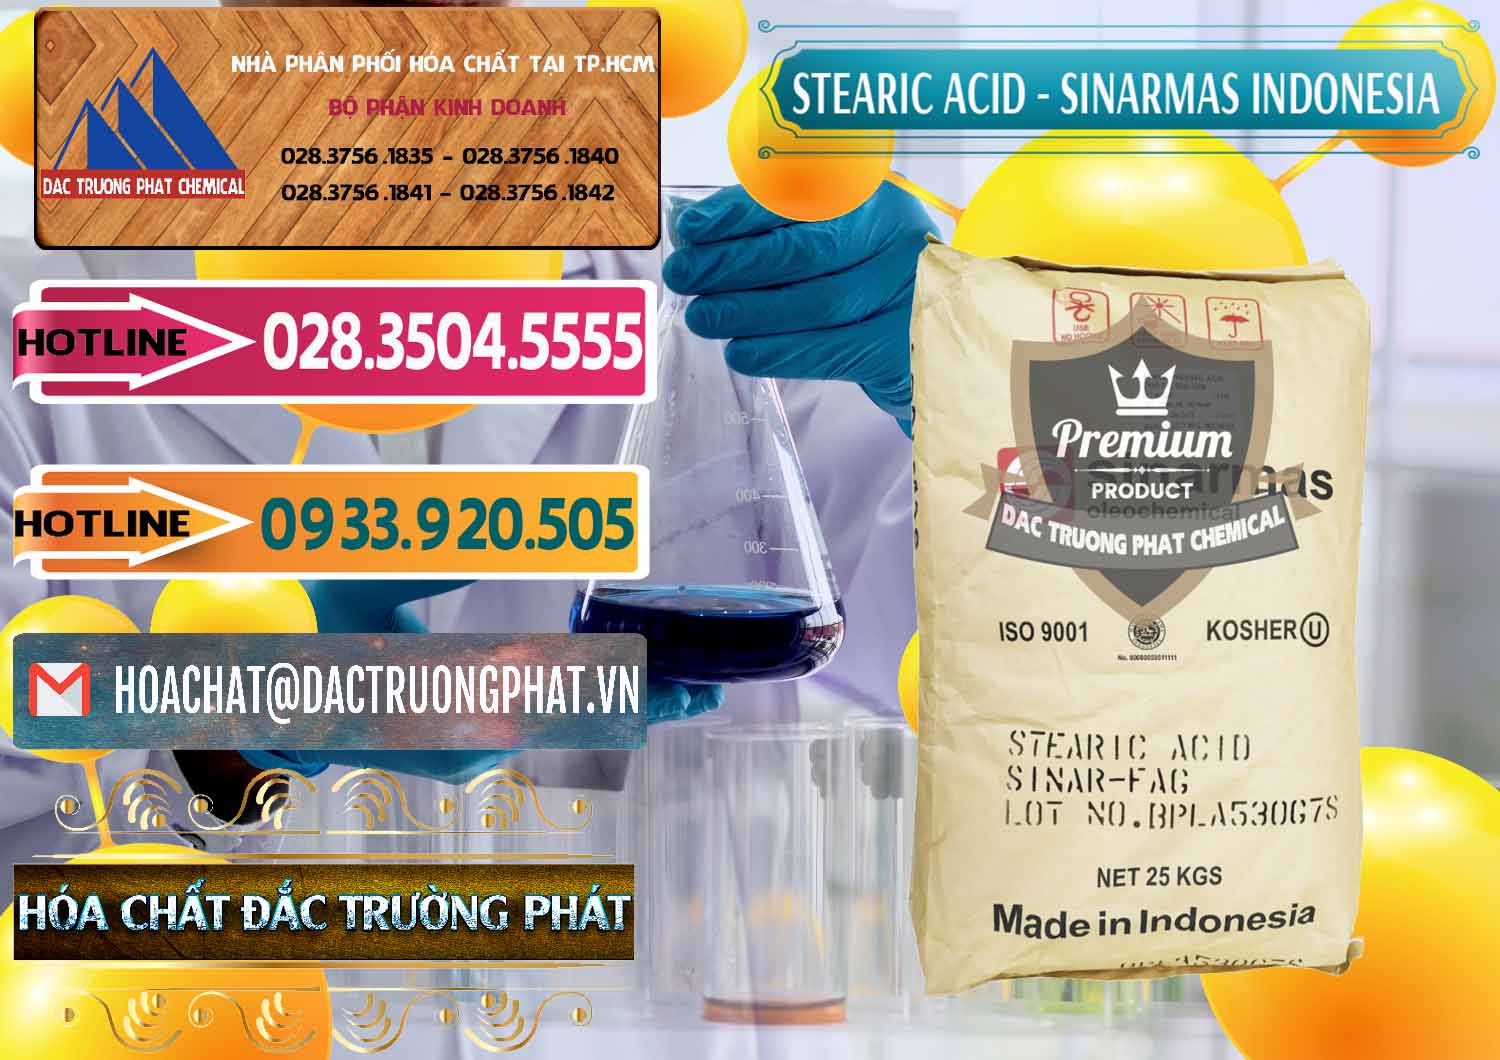 Nơi cung ứng và bán Axit Stearic - Stearic Acid Sinarmas Indonesia - 0389 - Cty chuyên phân phối - kinh doanh hóa chất tại TP.HCM - dactruongphat.vn